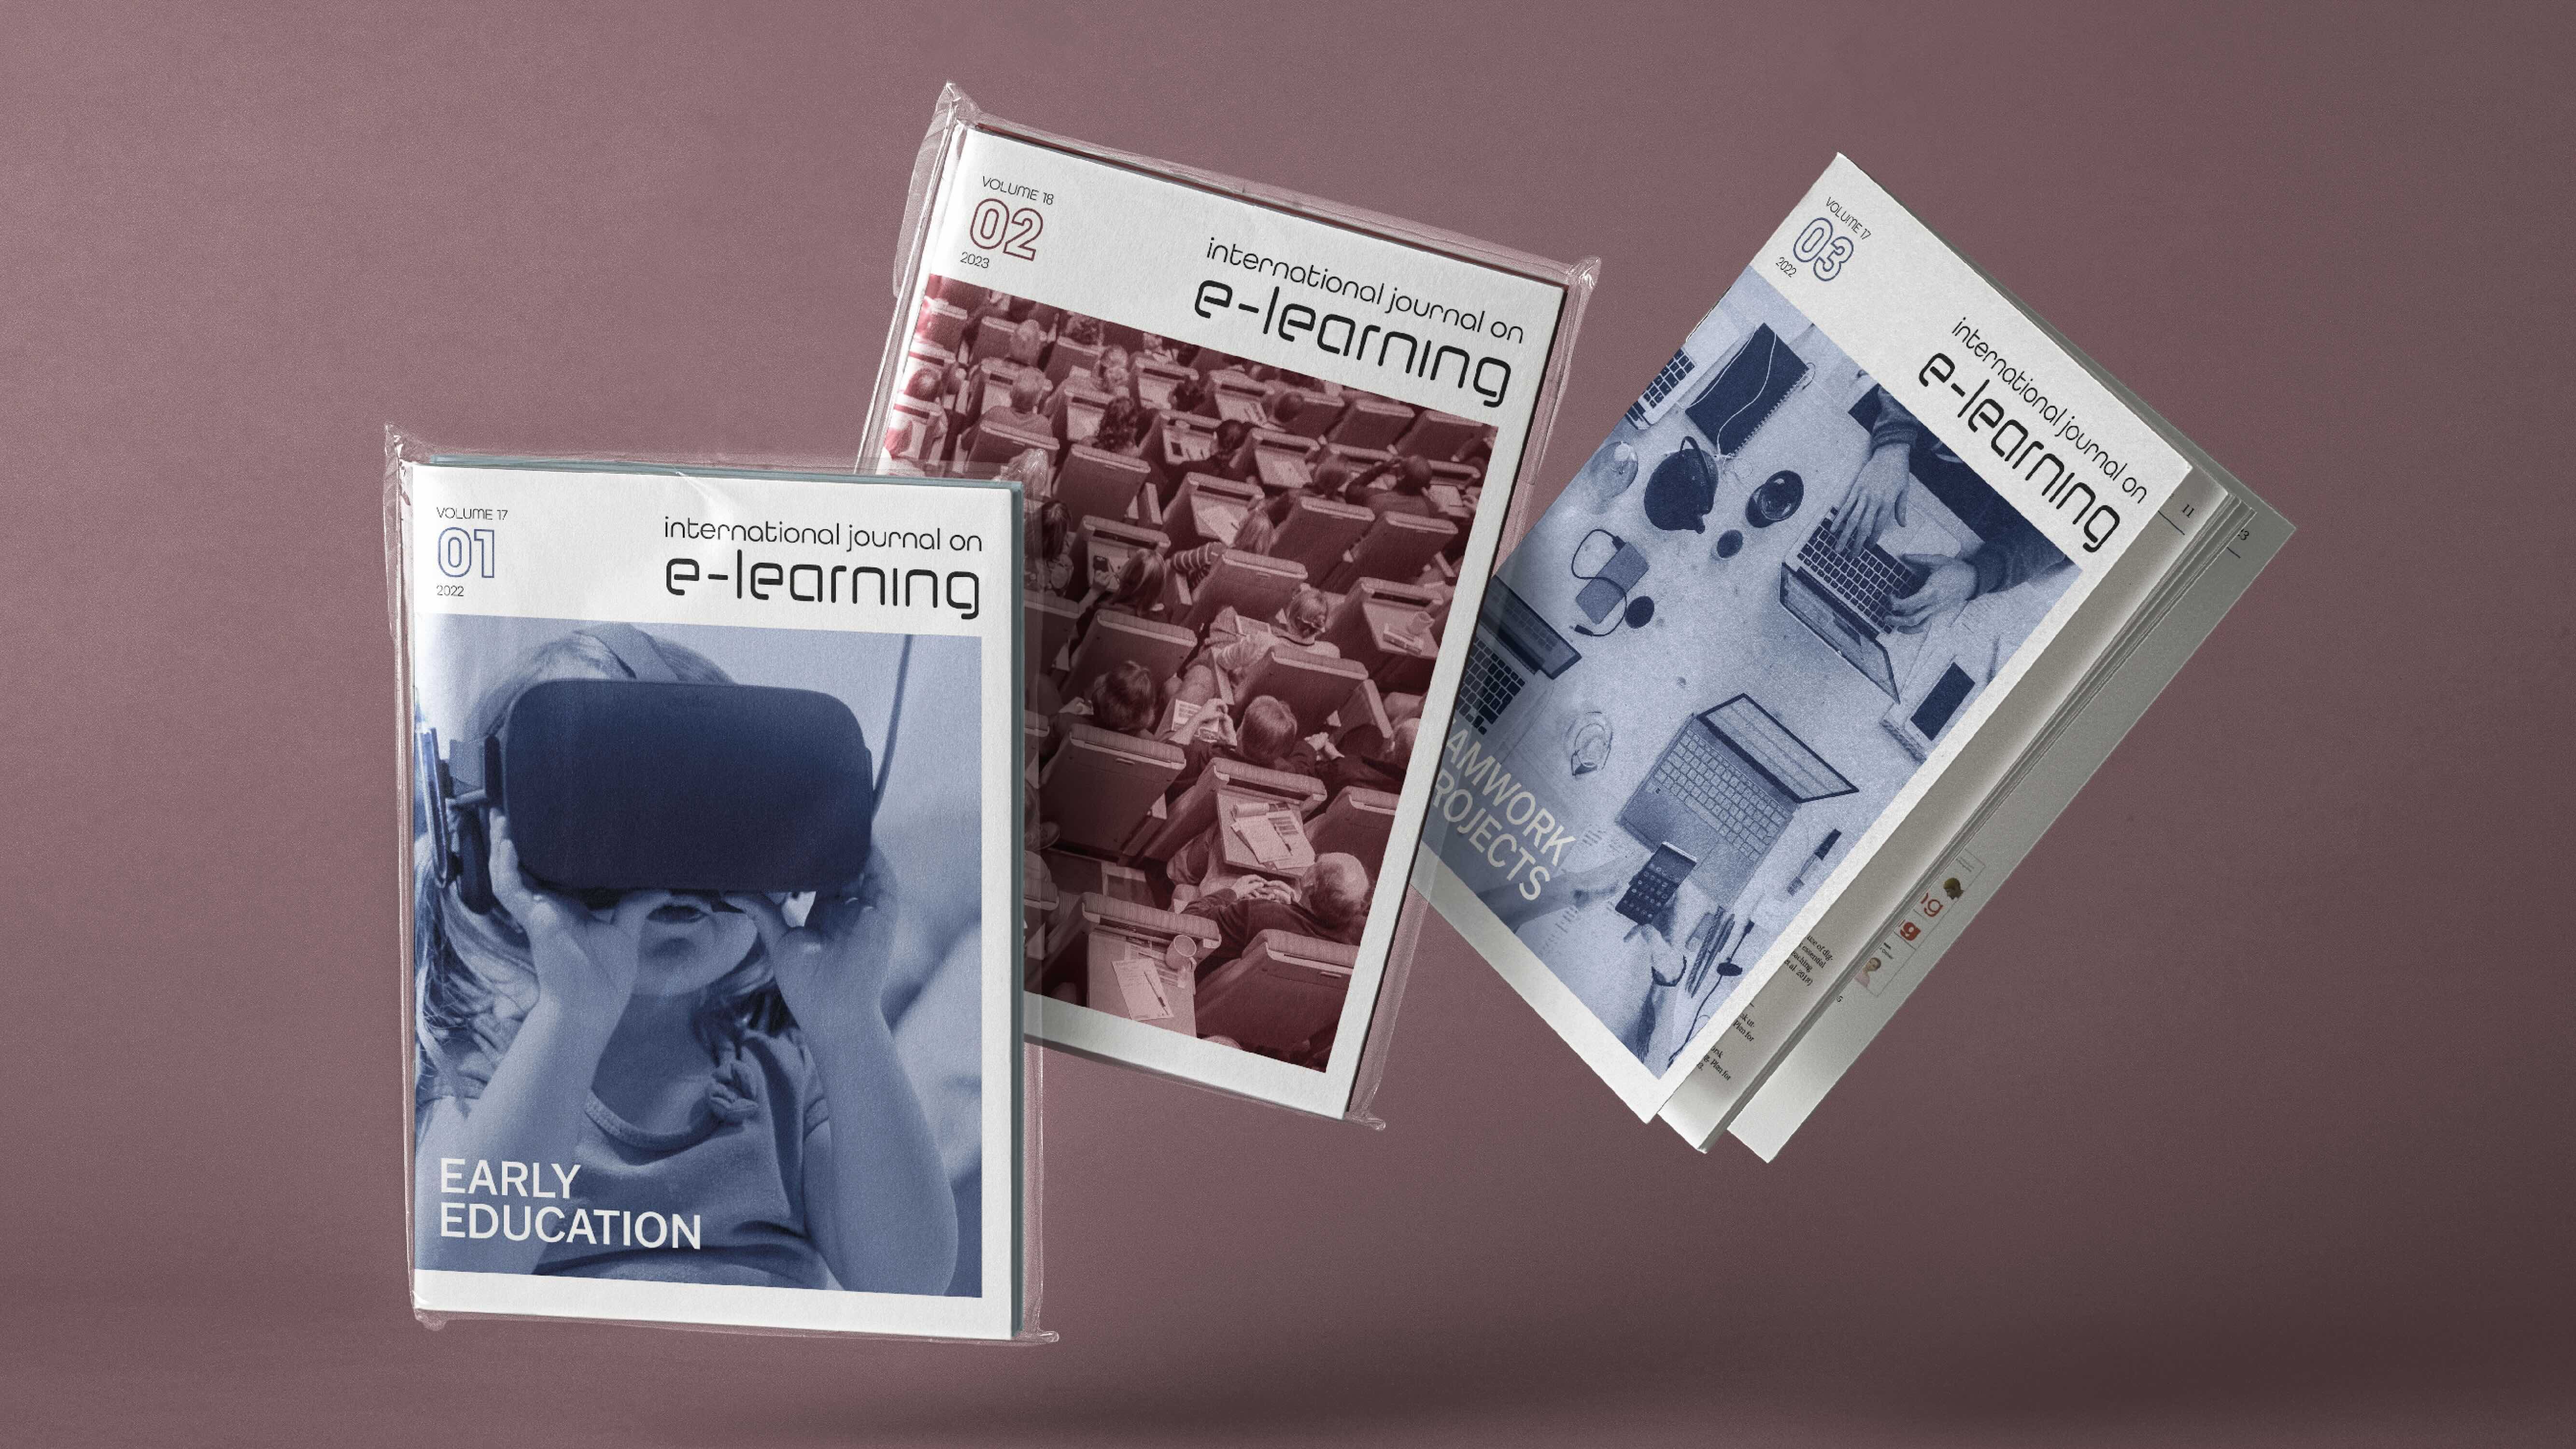 Tre fiktive utgaver av tidsskriftet International Journal on E-learing. To av dem er pakket i plastfolie, mens den tredje er litt åpen og viser litt av innholdet. Foto mockup.